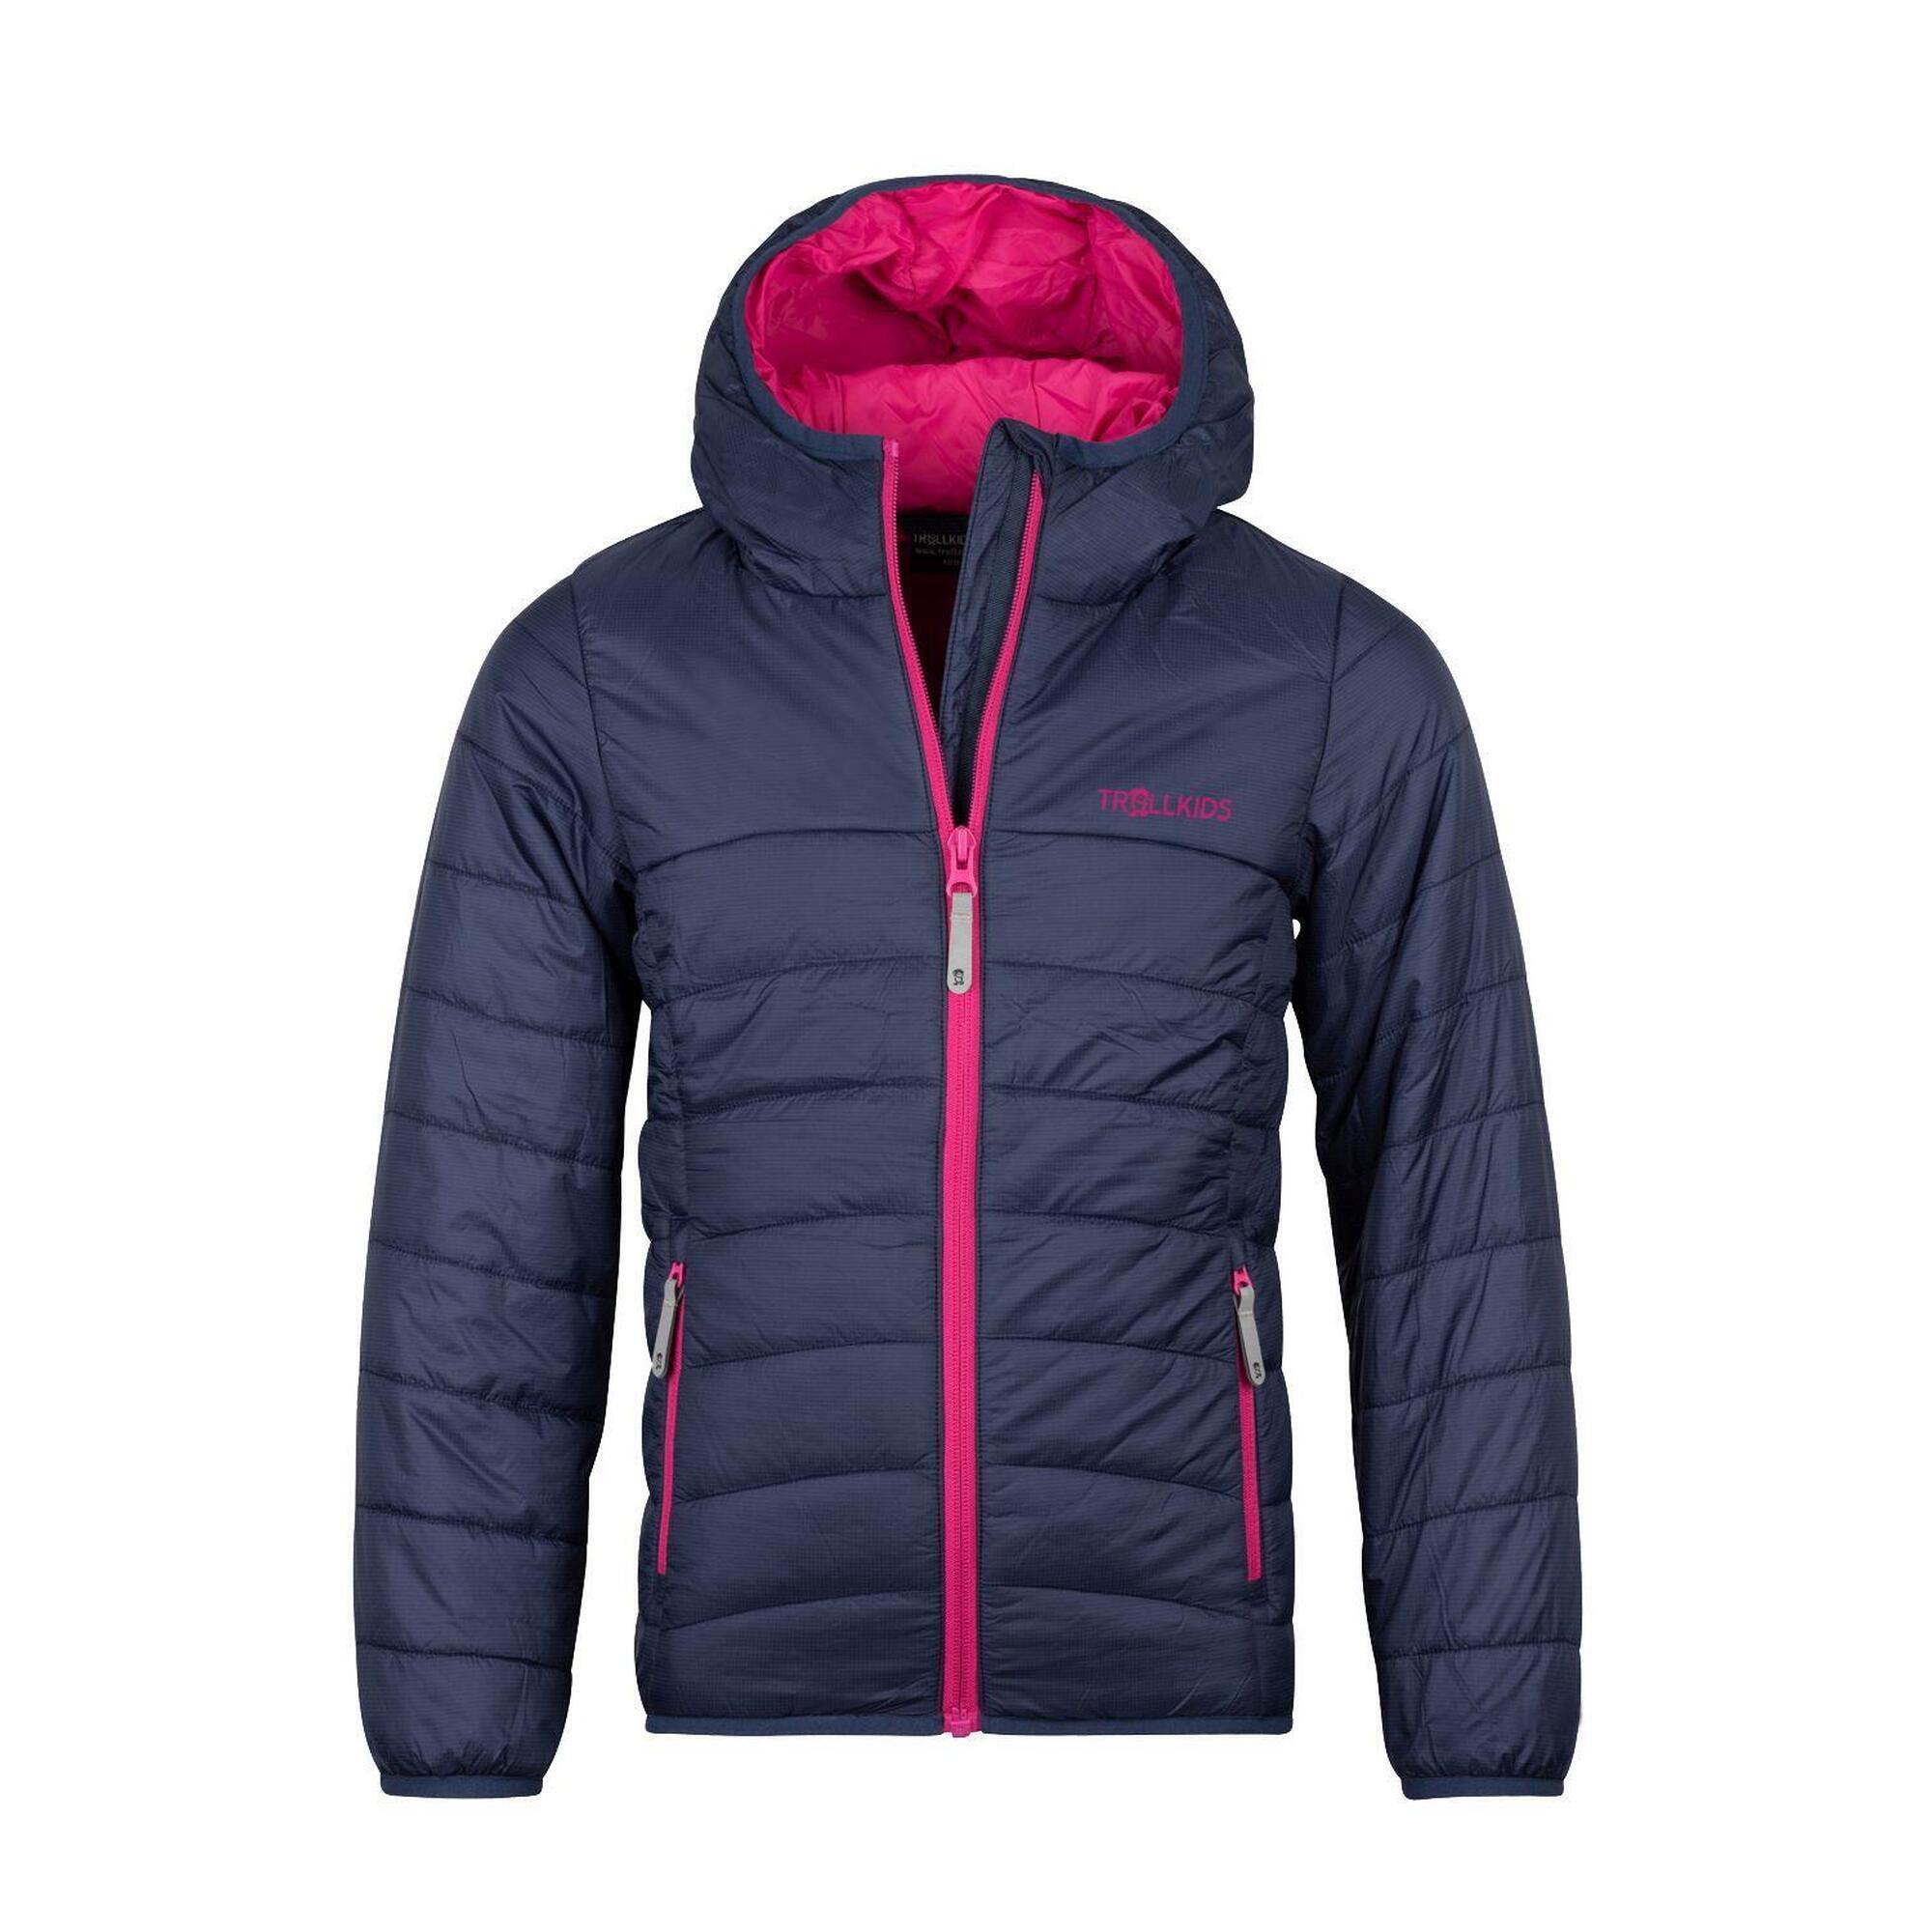 Куртка стеганая Trollkids Eikefjord для девочки, темно-синий/фиолетовый куртка стеганая средней длины с пришитым капюшоном зимняя l черный